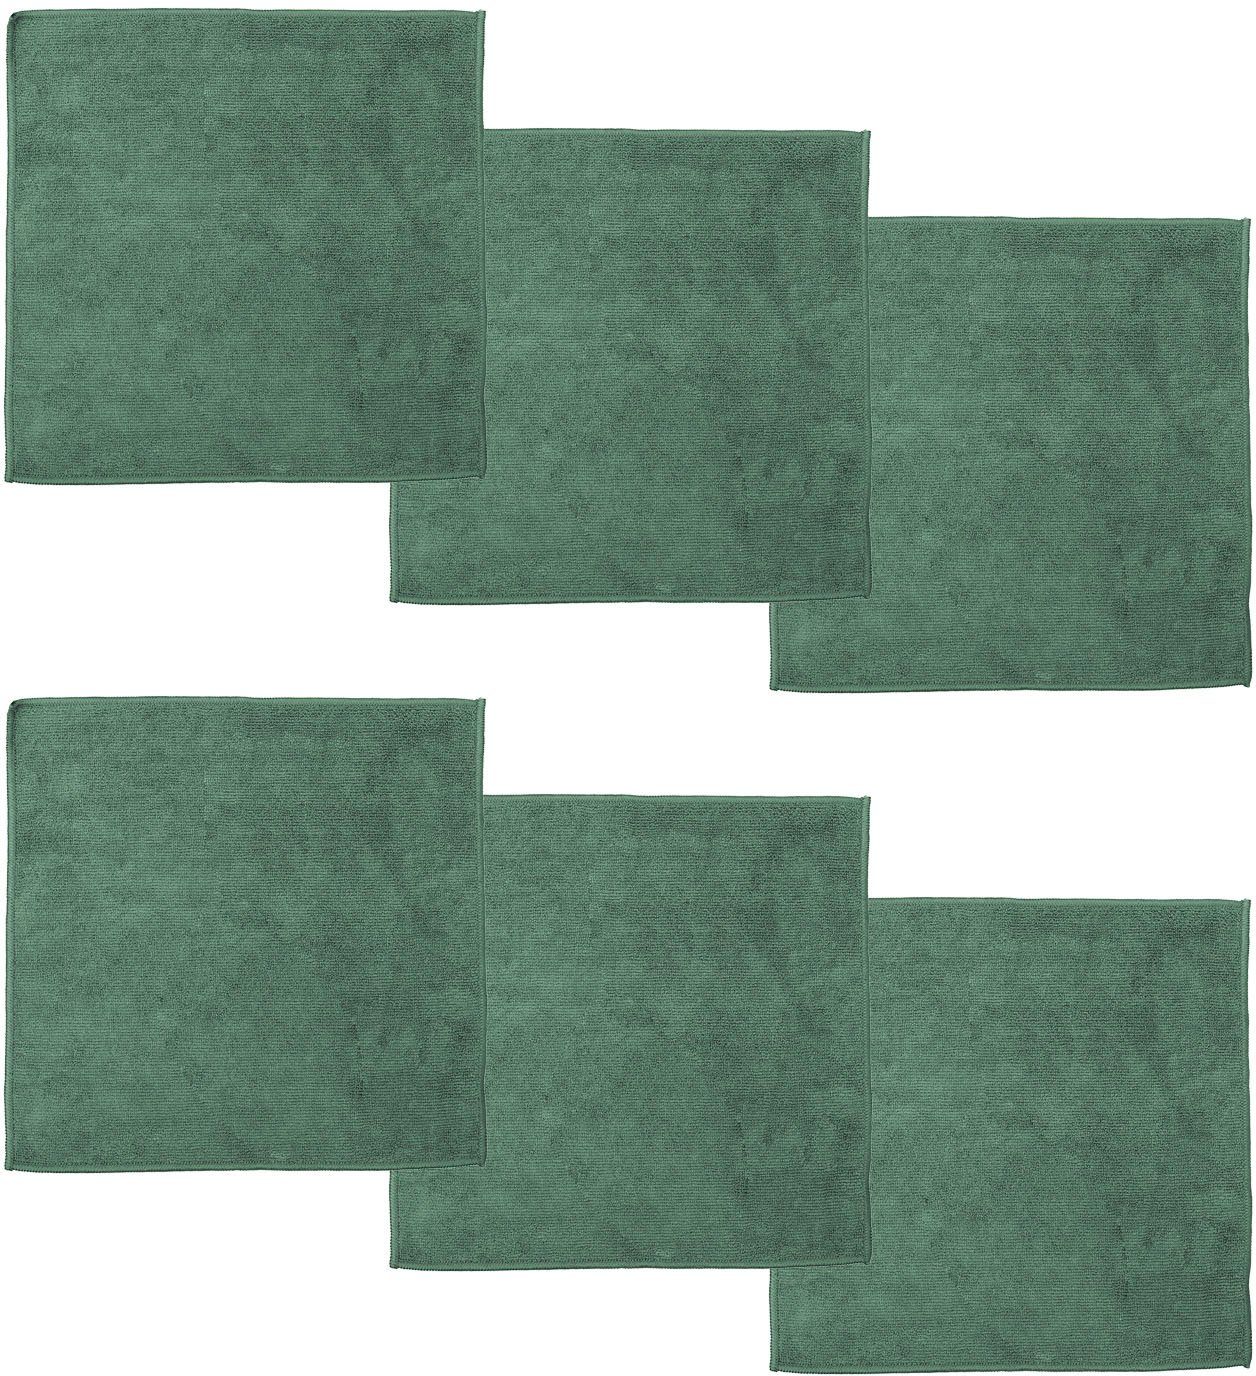 grün DDDDD reinigt (Mikrofaser, Mikrofasertuch 30x30 cm, Set, streifenfrei) Billie 6-tlg., glänzend und